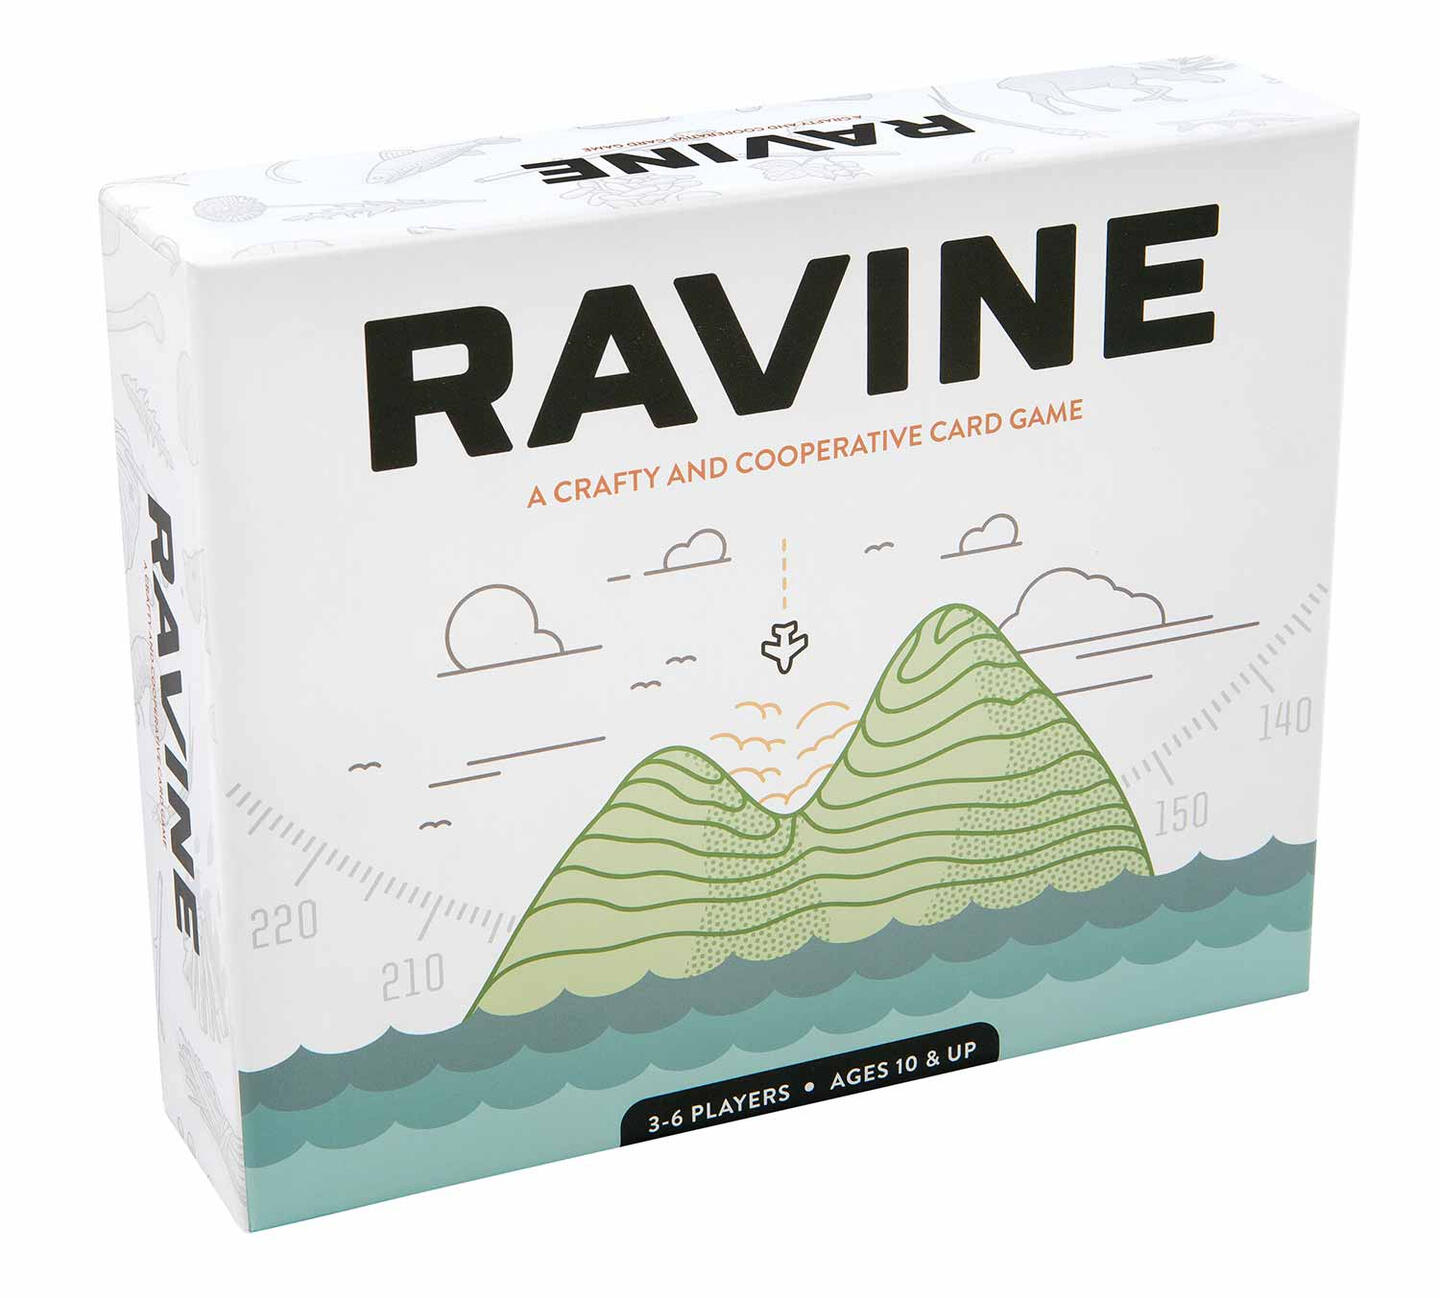 Ravine packaging